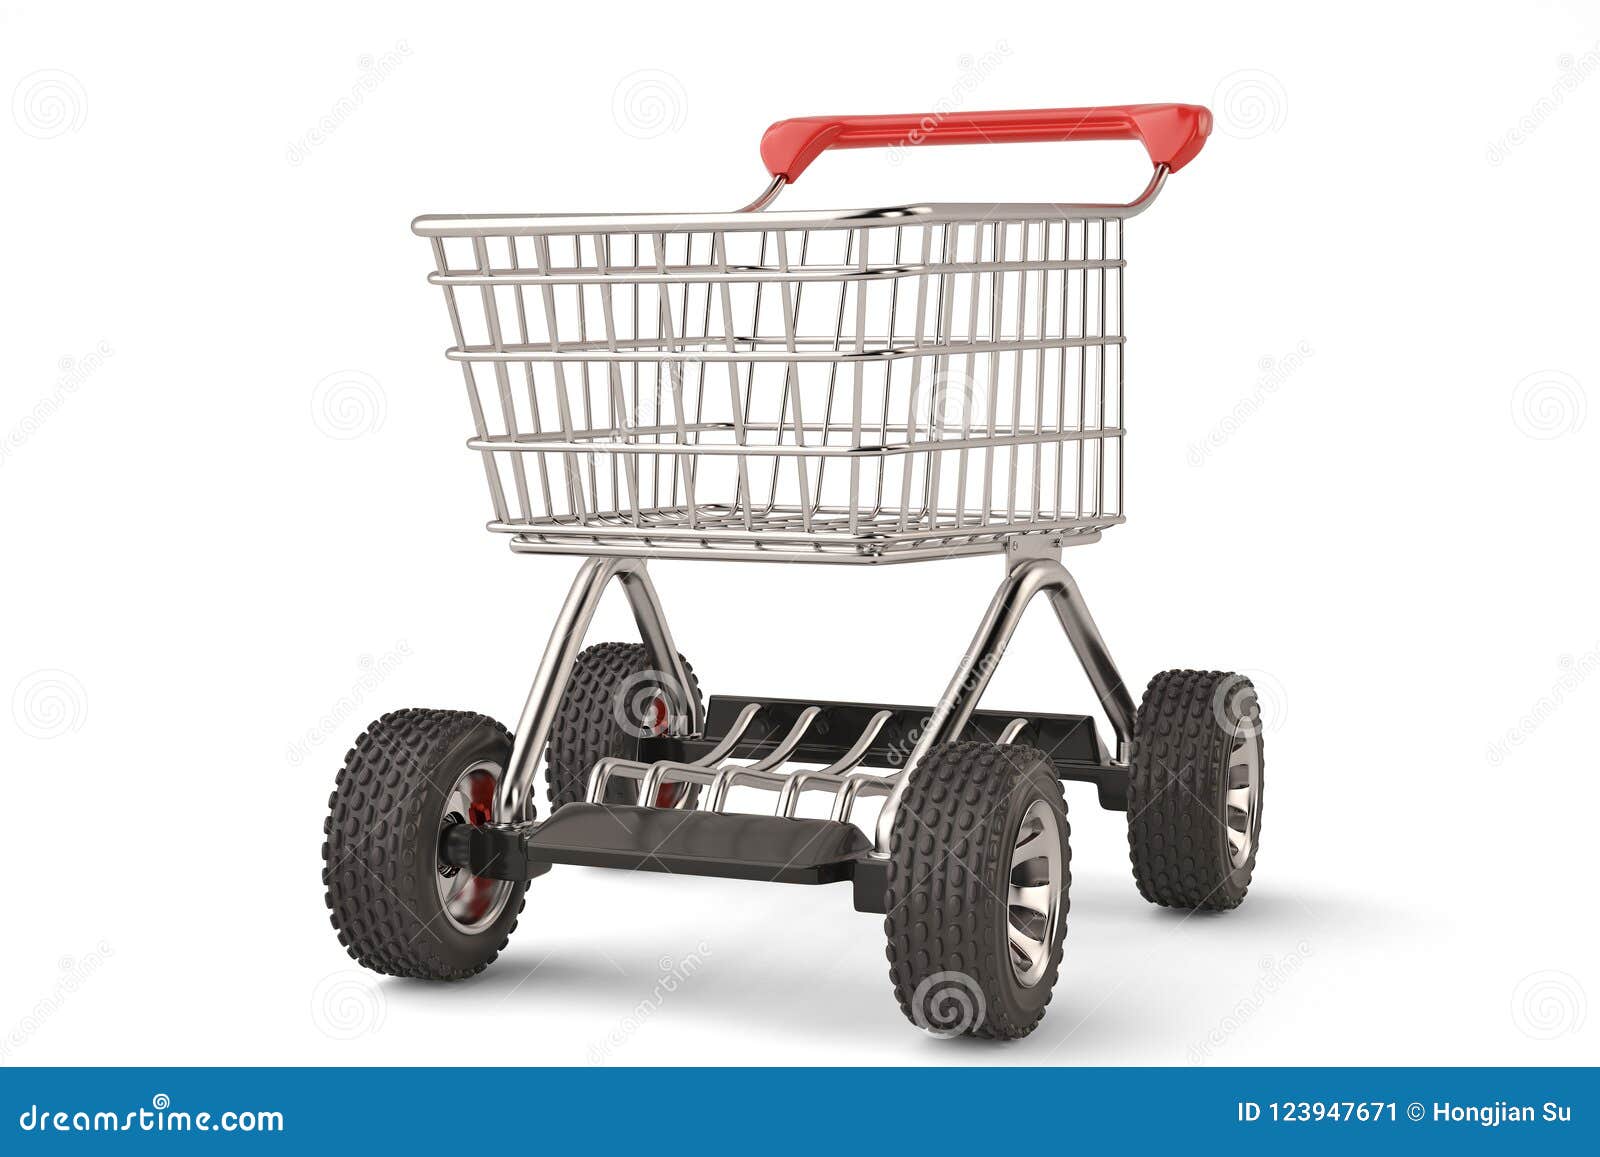 concept-shopping-cart-big-car-wheel-high-resolution-d-illustration-concept-shopping-cart-big-car-wheel-high-resolution-d-123947671.jpg